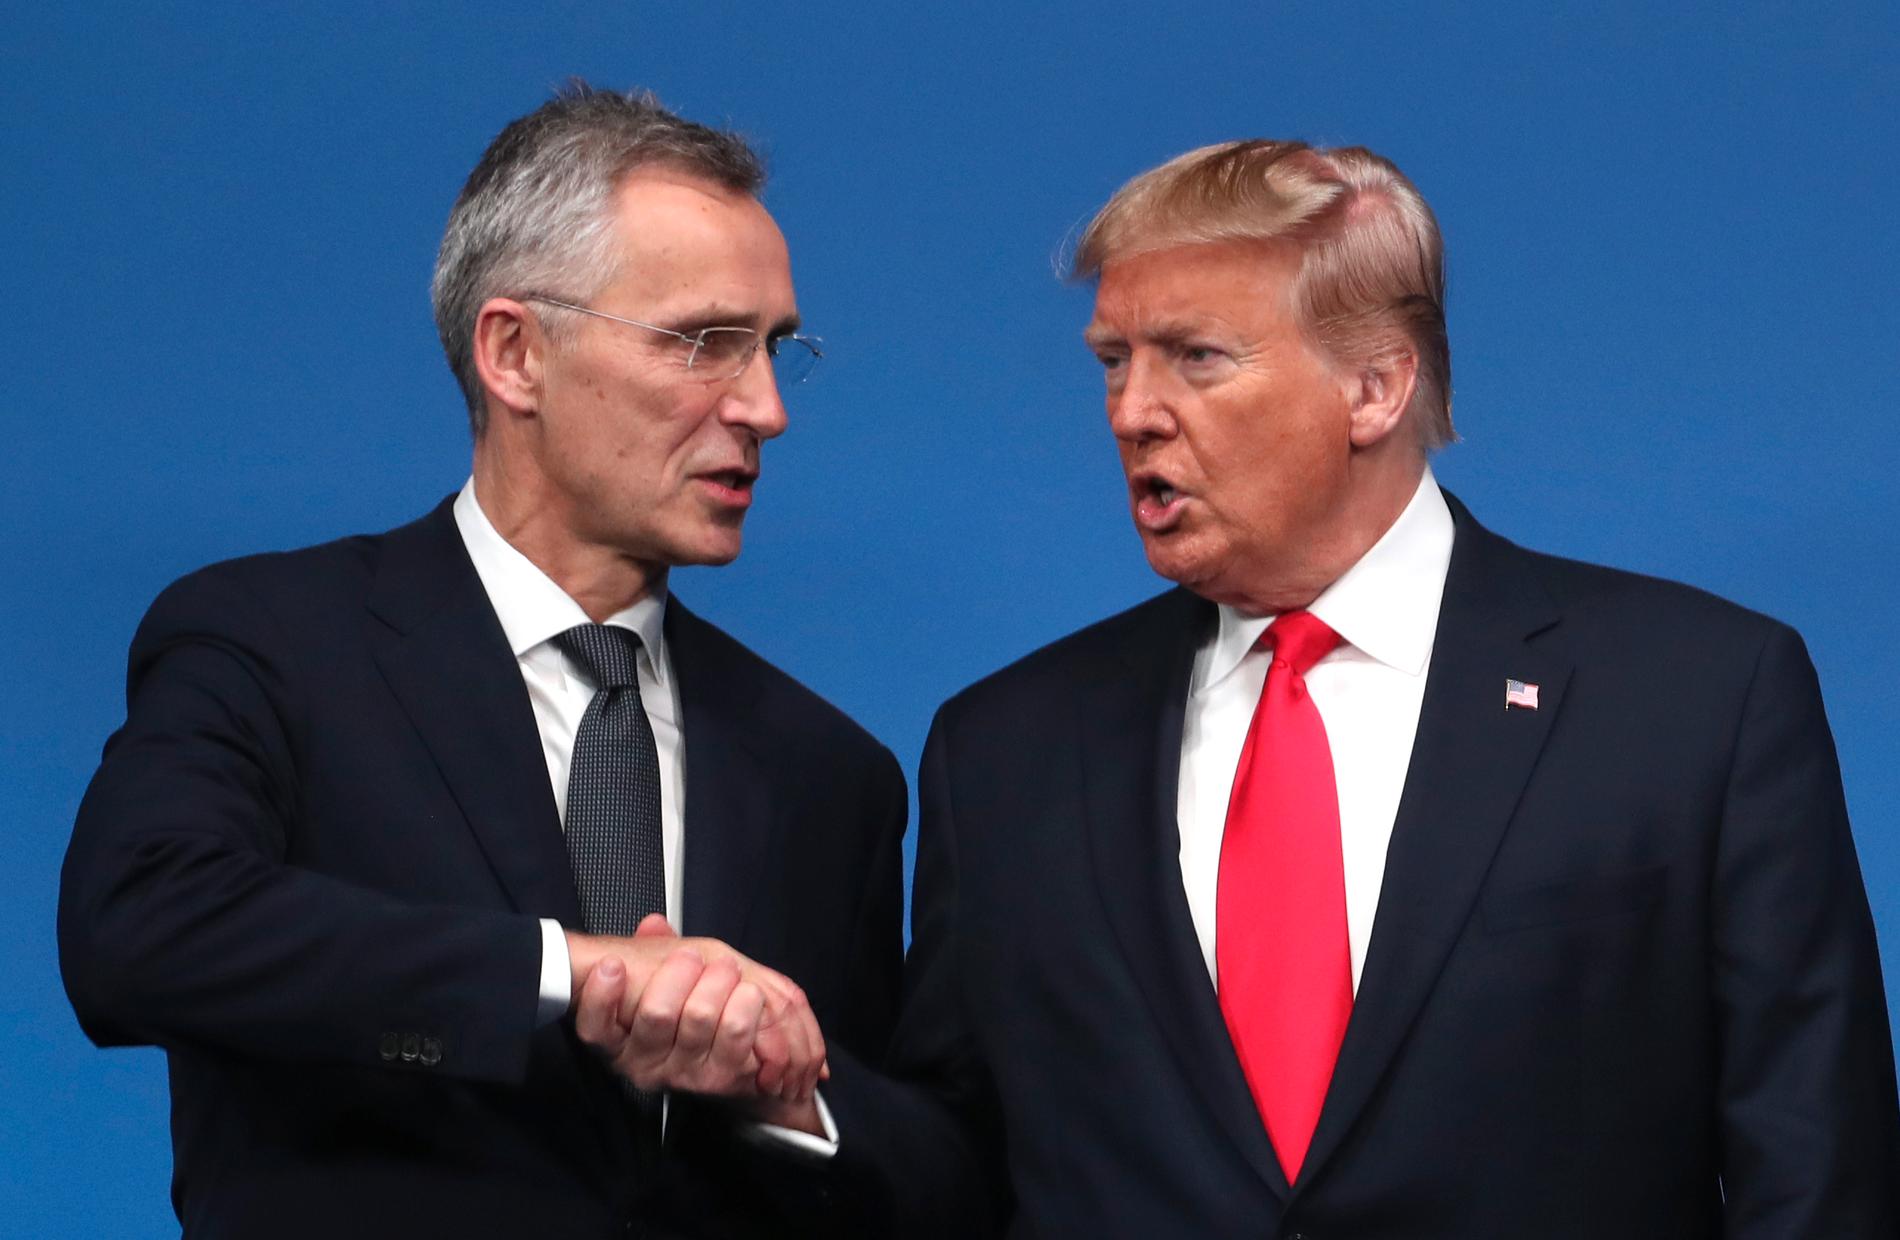 Natochefen Jens Stoltenberg och Donald Trump möttes här i England 2019.